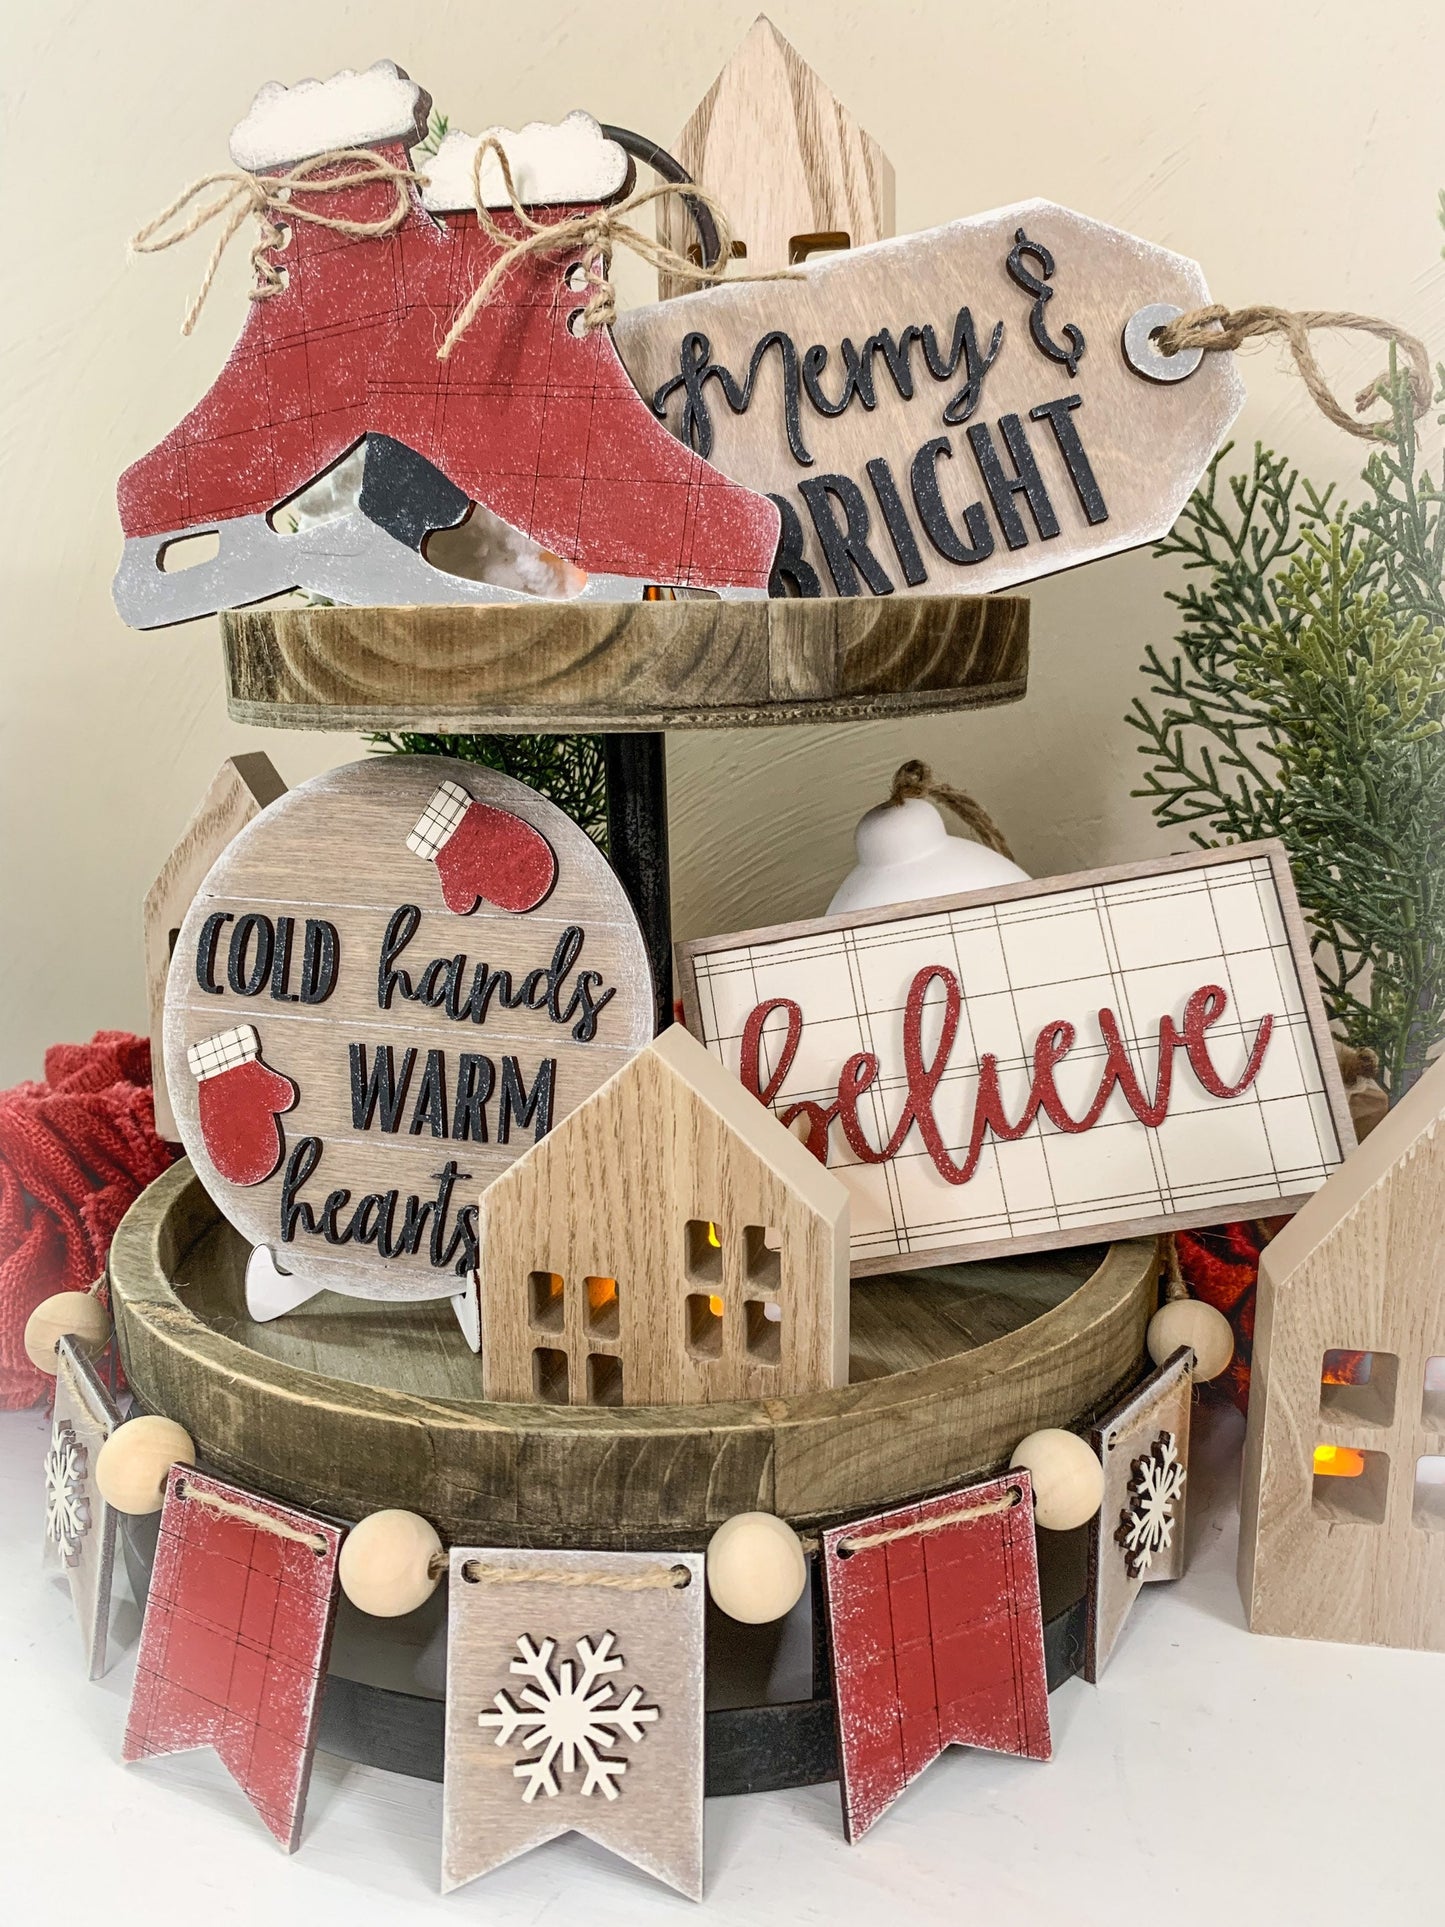 Christmas Tiered Tray - DIY Kits - Decorative Tray -